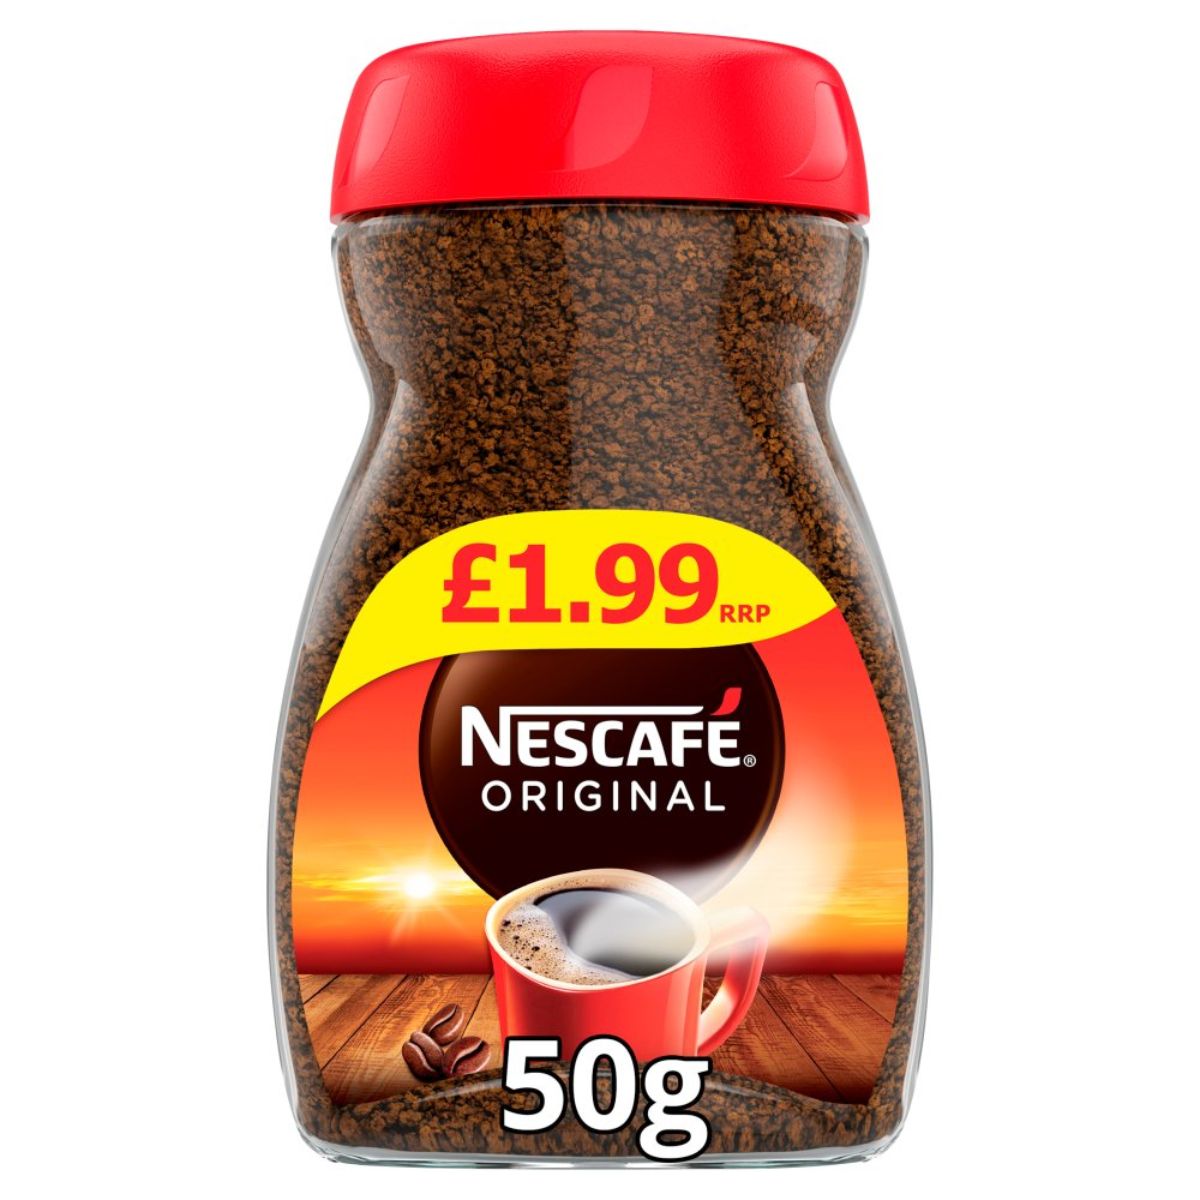 Product Name: Nescafe - Original - 50g